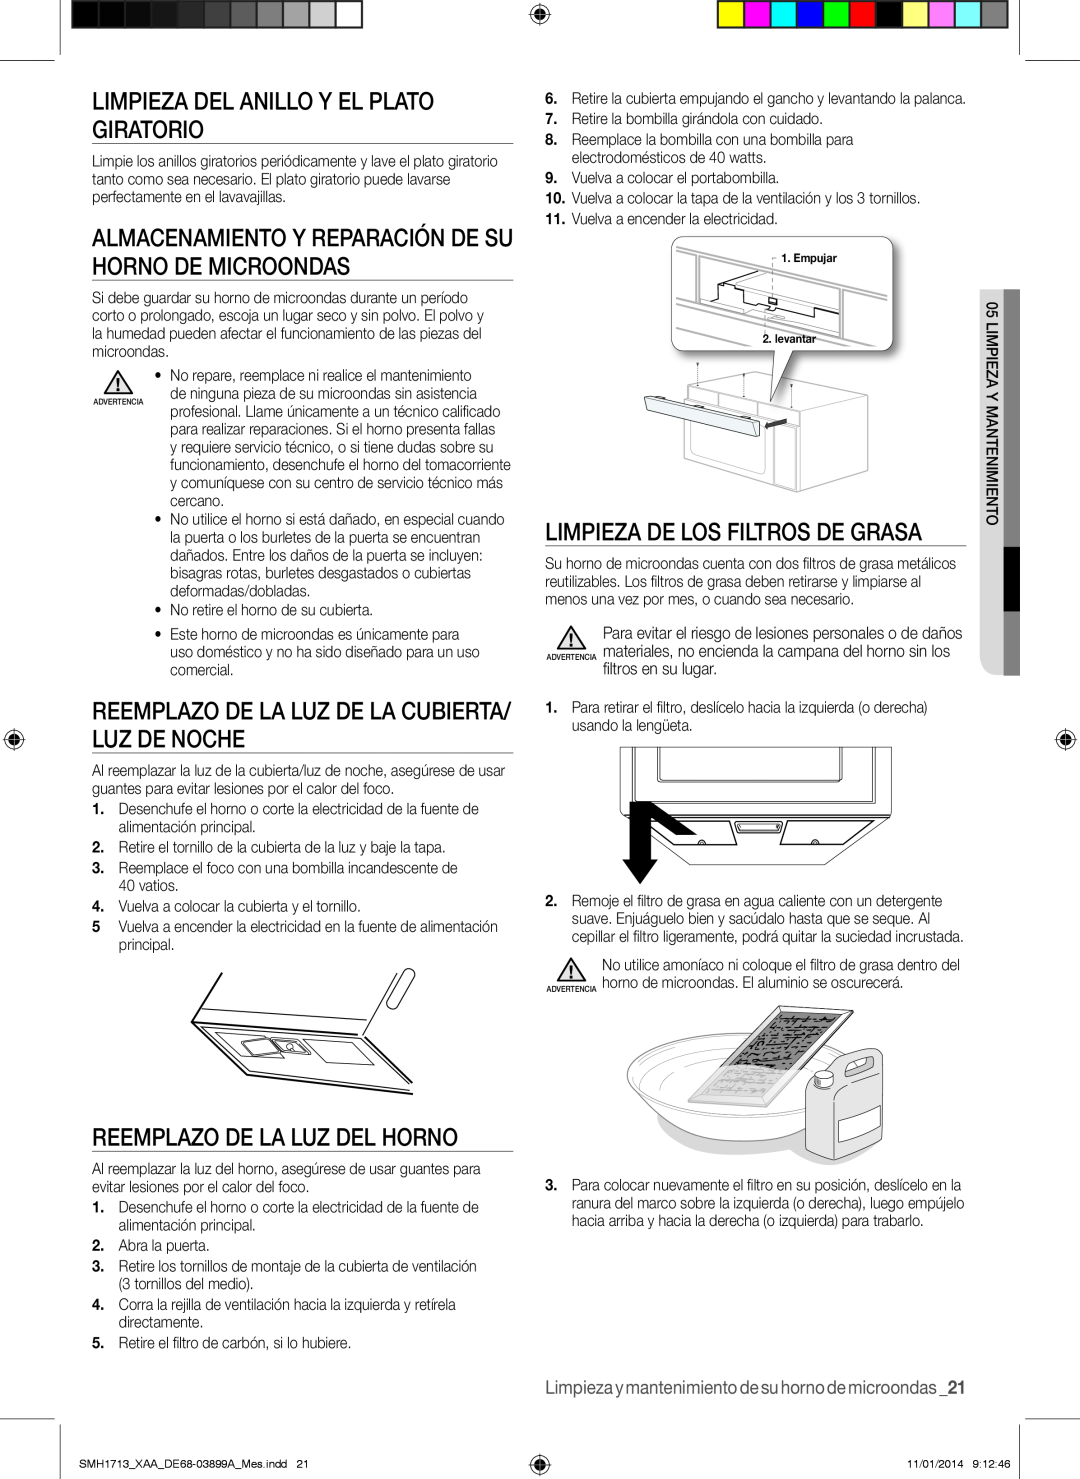 Samsung SMH1713 user manual Limpieza del anillo y el plato giratorio, Almacenamiento y reparación de su horno de microondas 